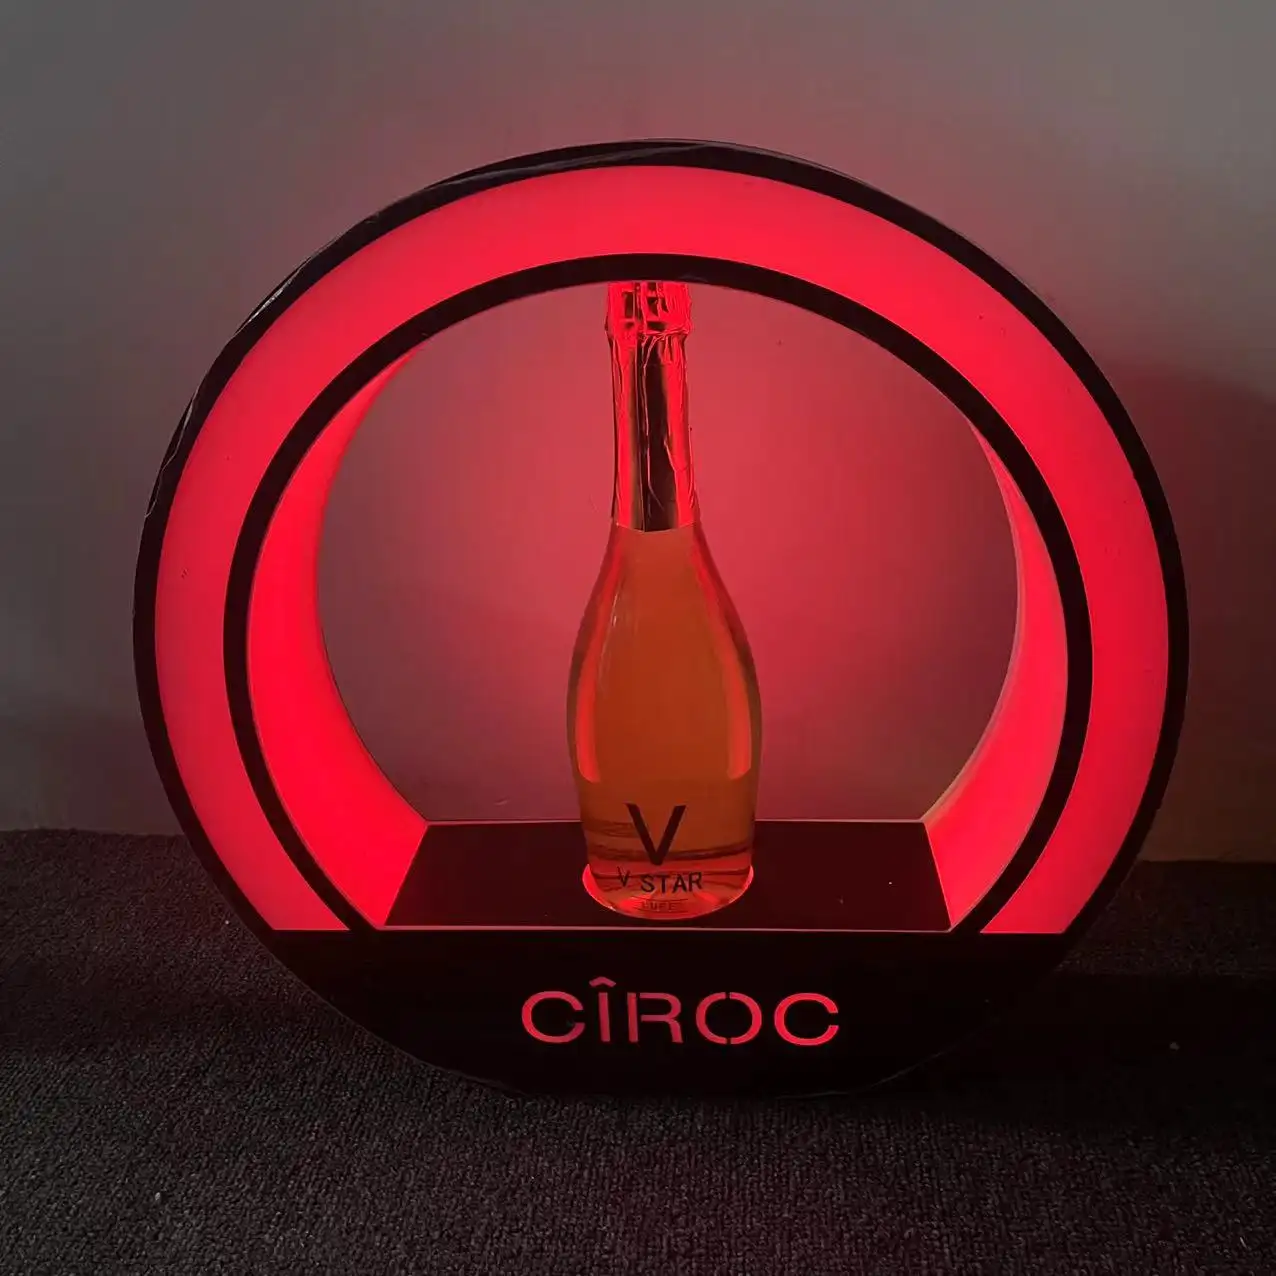 Venda quente Vip Ciroc Champagne LED garrafa glorificador Vip Display servindo suporte de garrafa para bar de festa